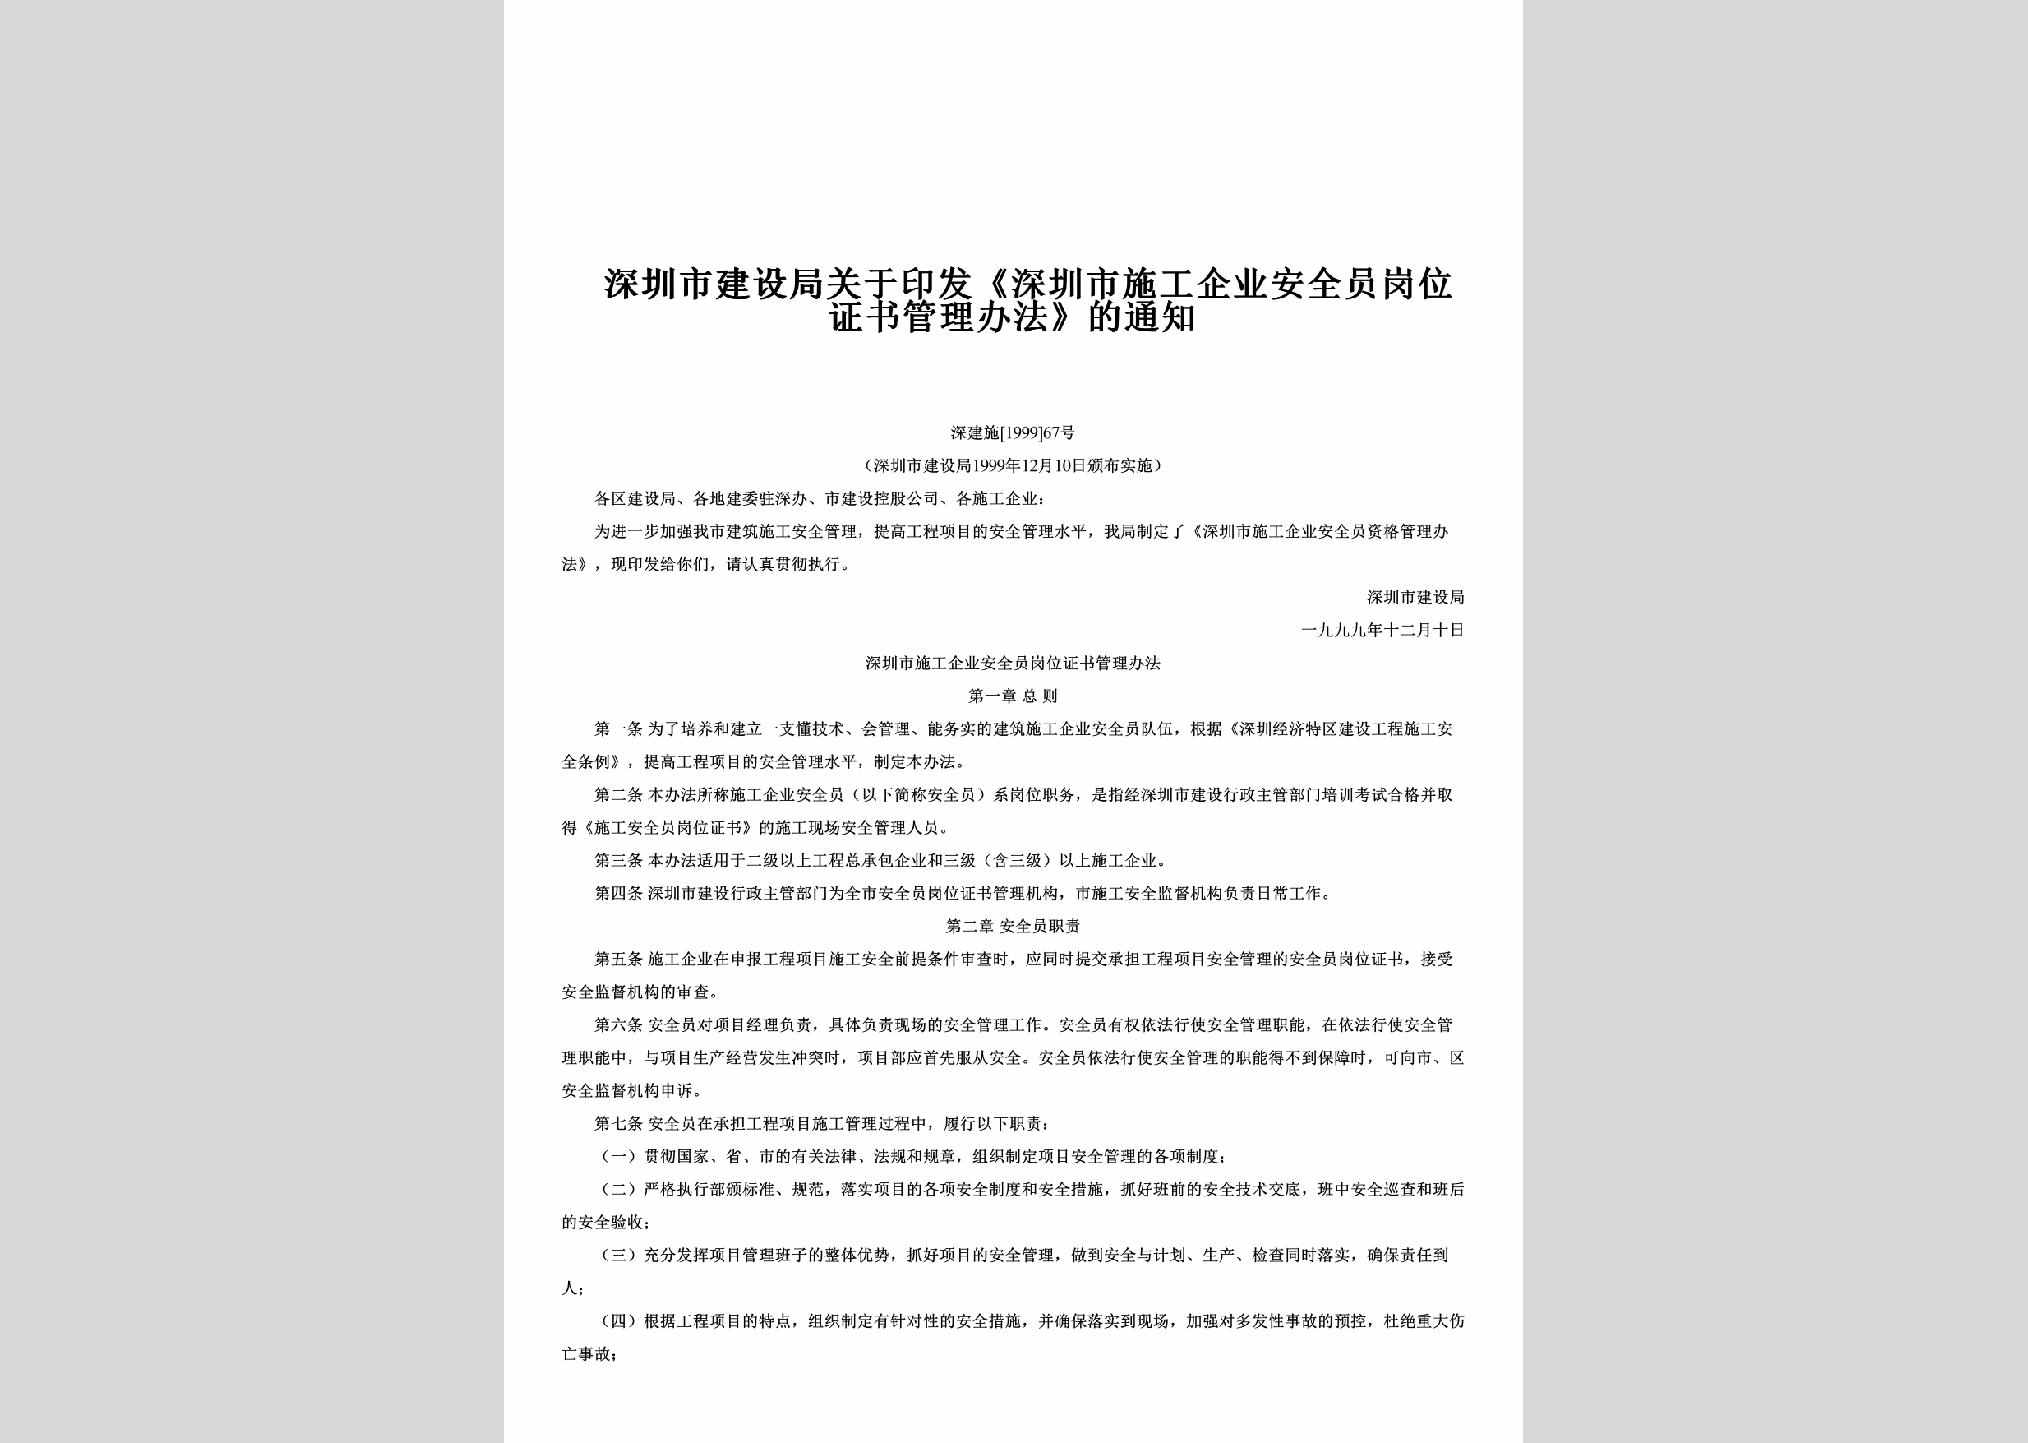 深建施[1999]67号：关于印发《深圳市施工企业安全员岗位证书管理办法》的通知